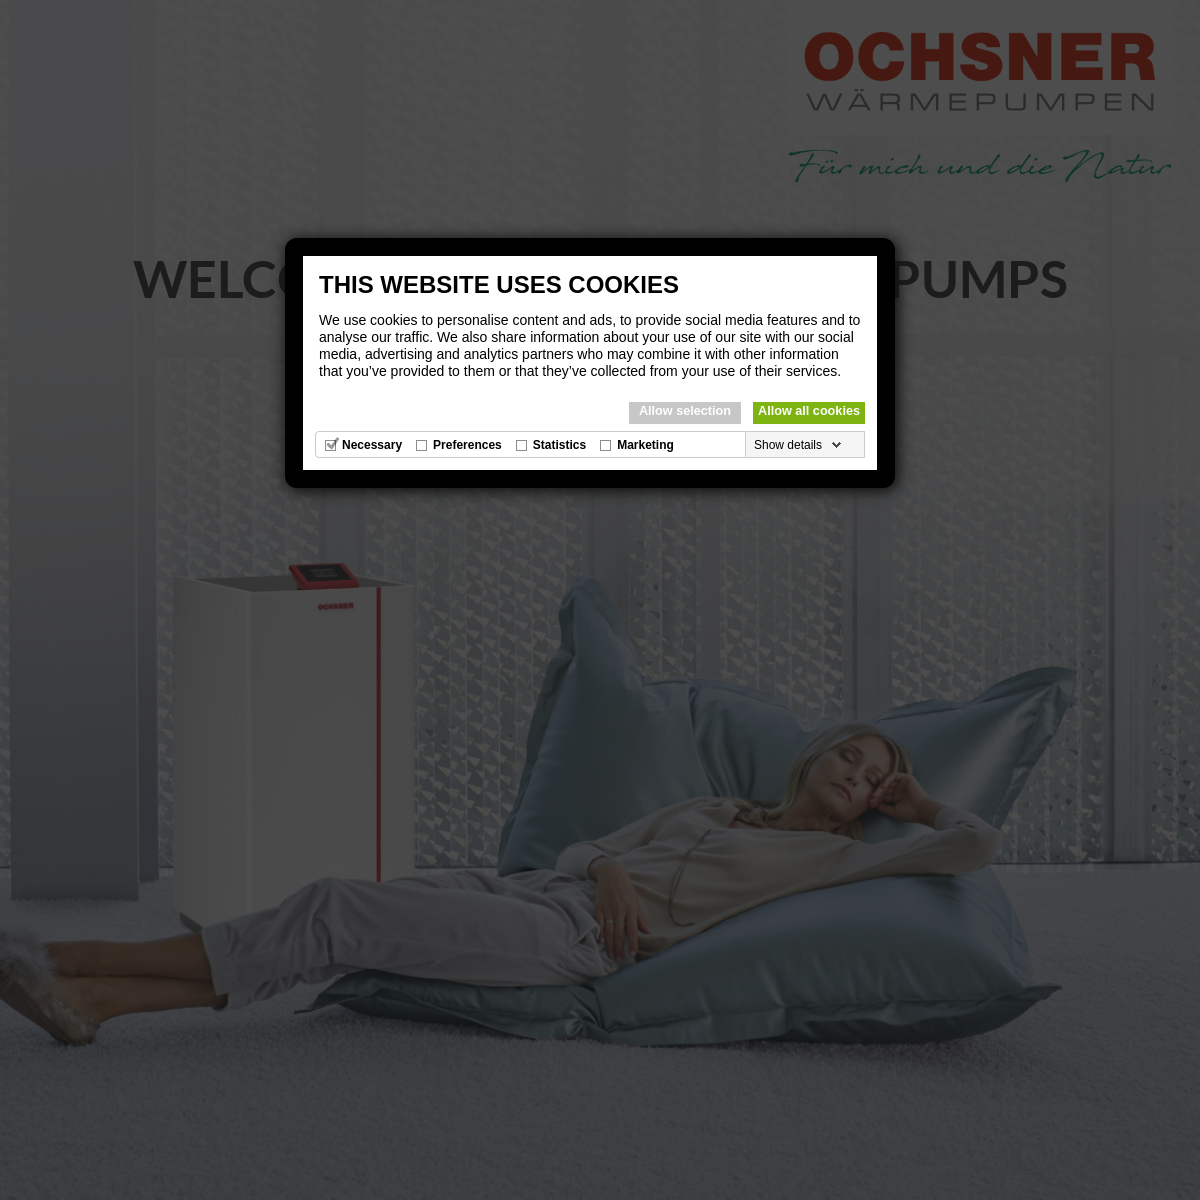 A complete backup of ochsner.com